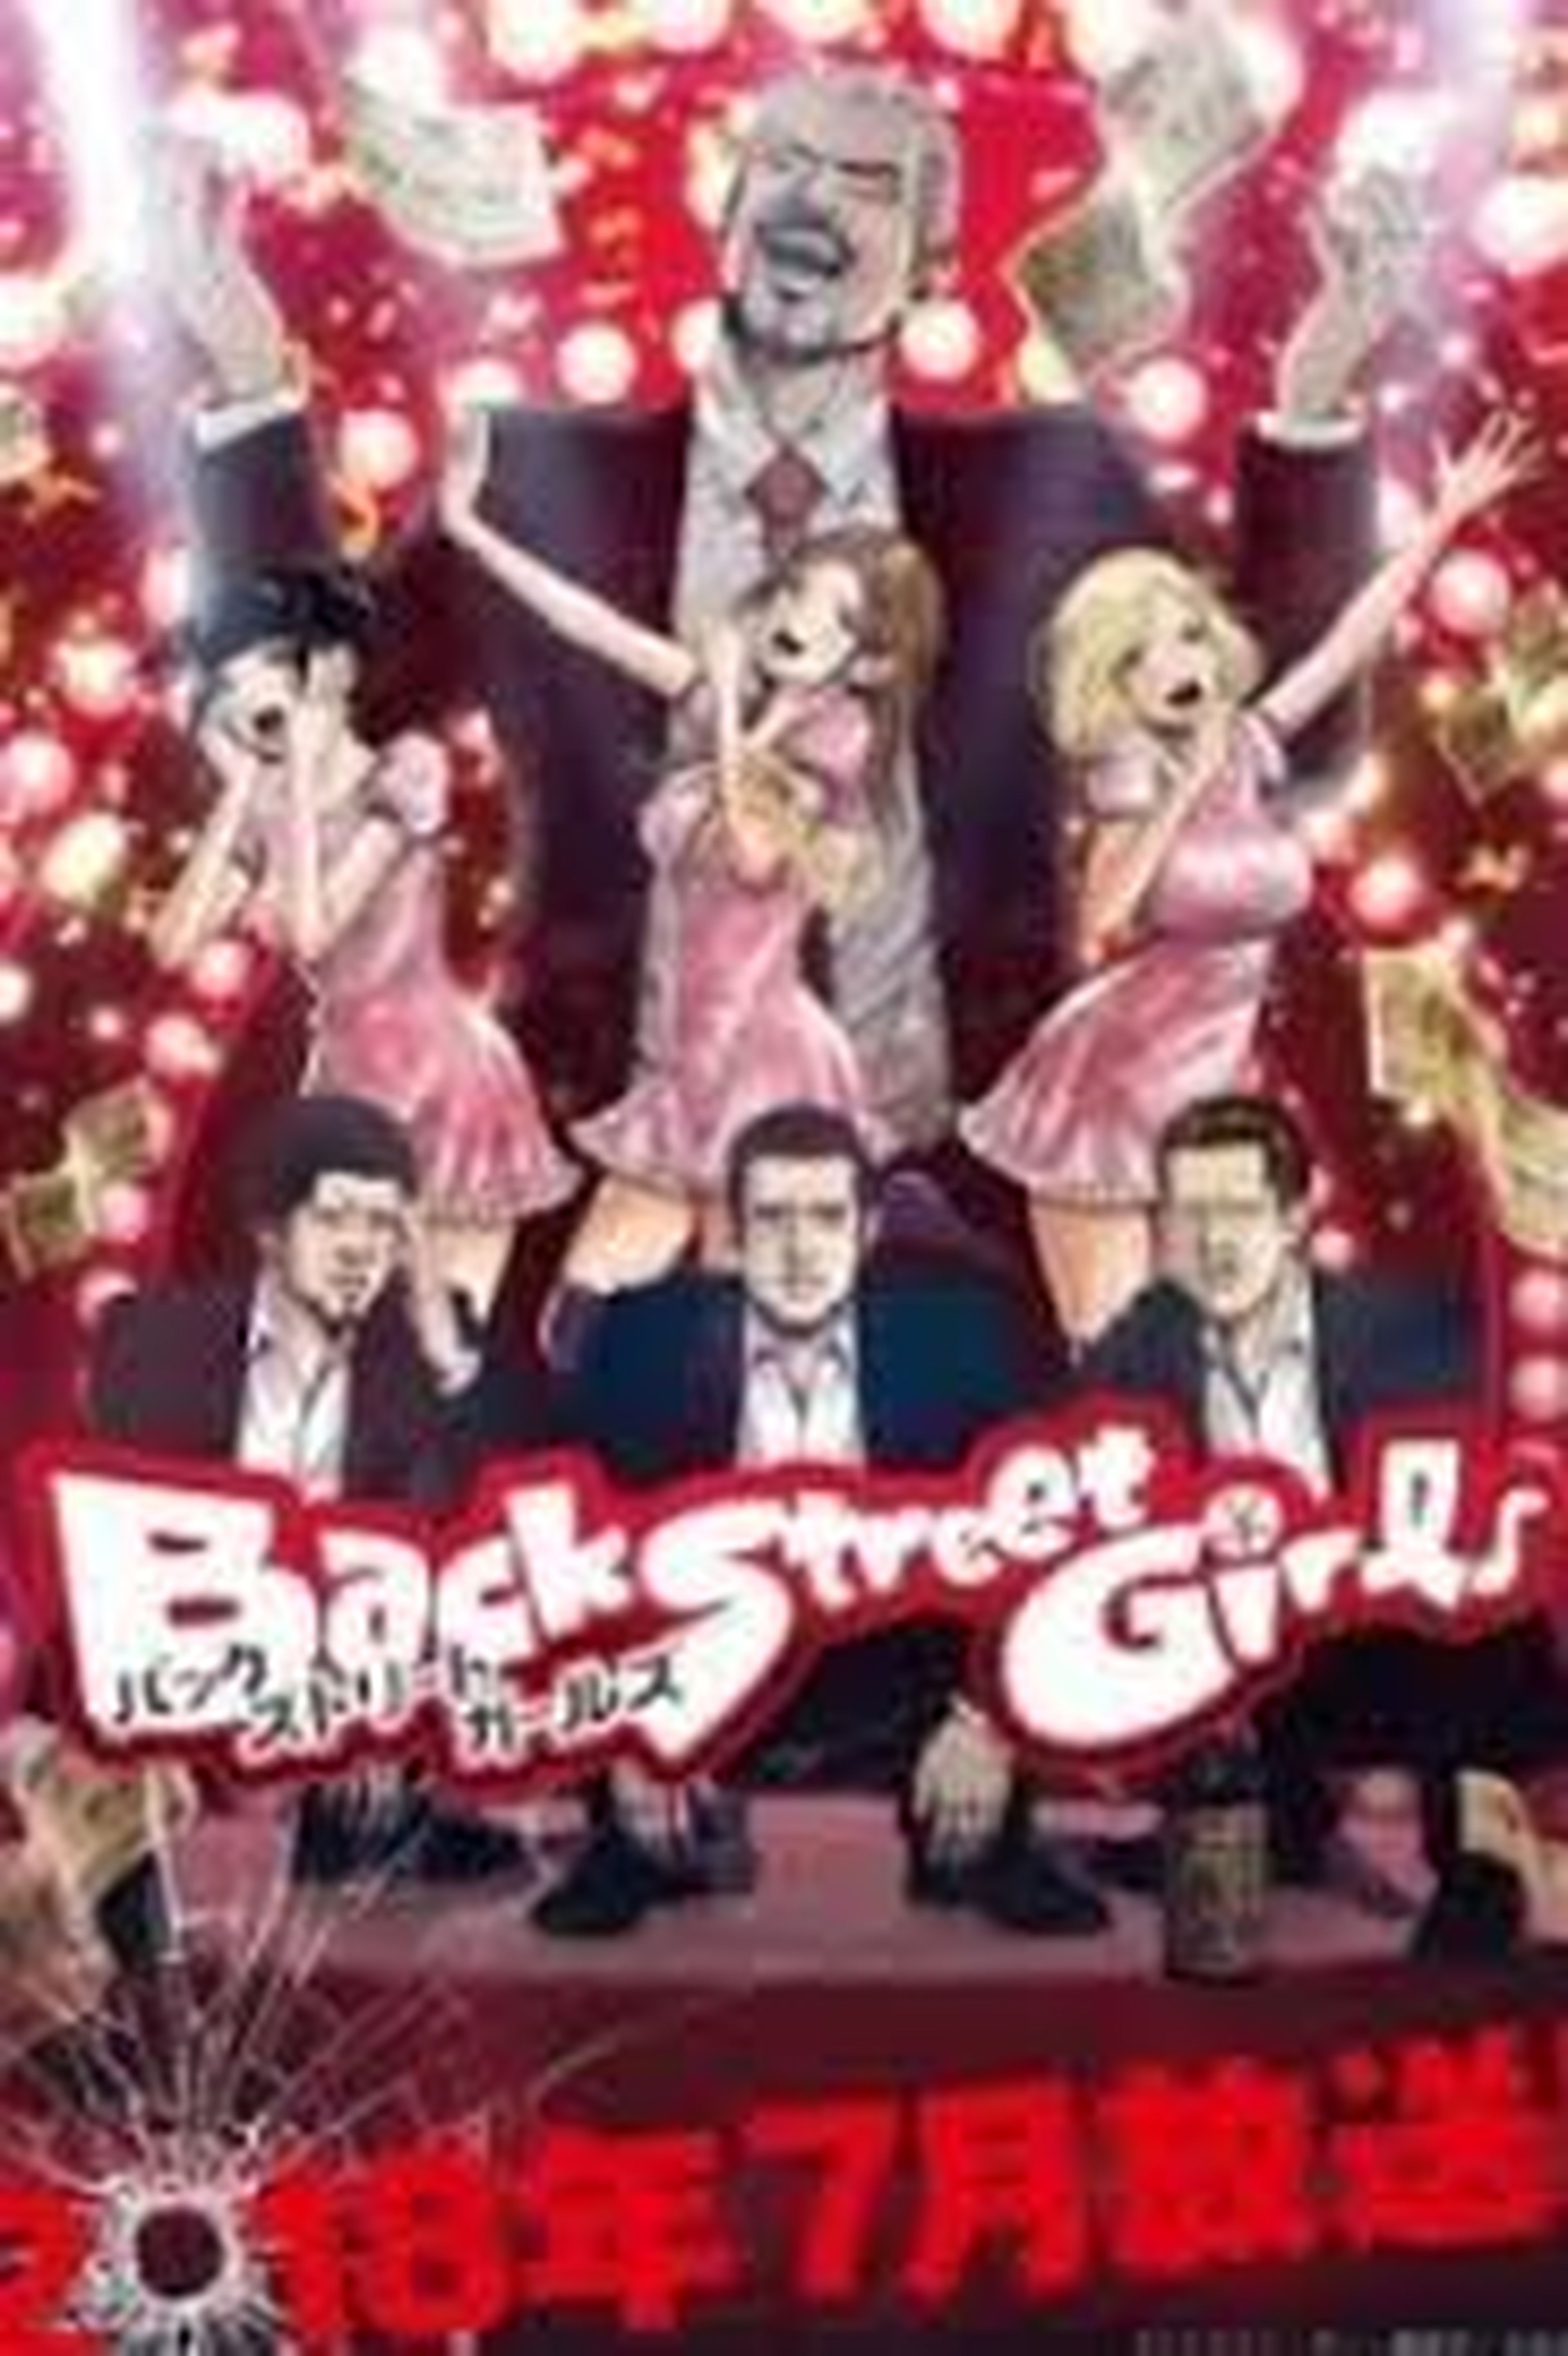 Back Street Girls cover